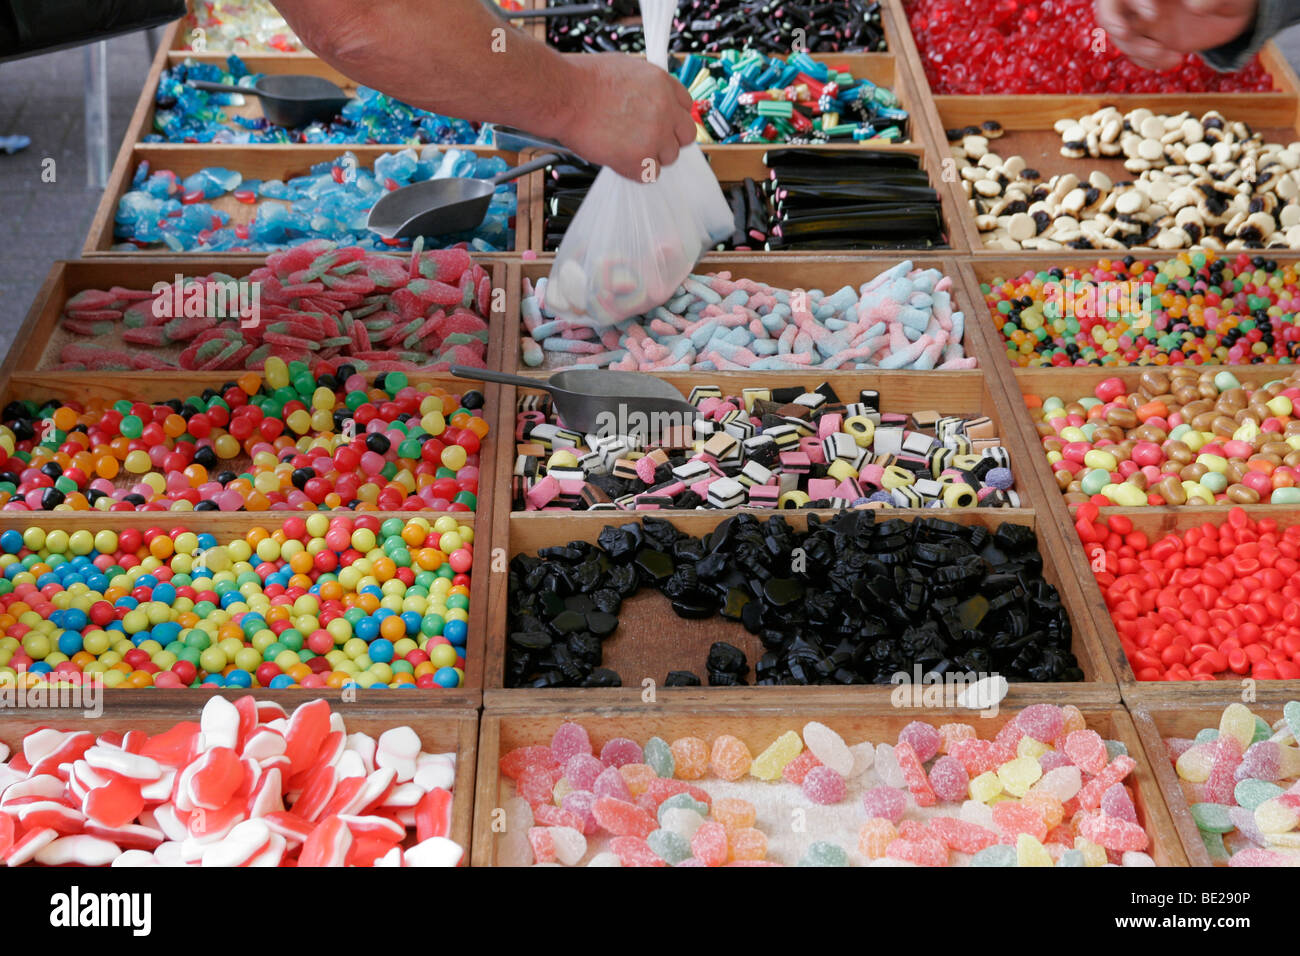 Choisir et mélanger les sucreries dans les bacs sur une échoppe de marché, Lille, France Banque D'Images